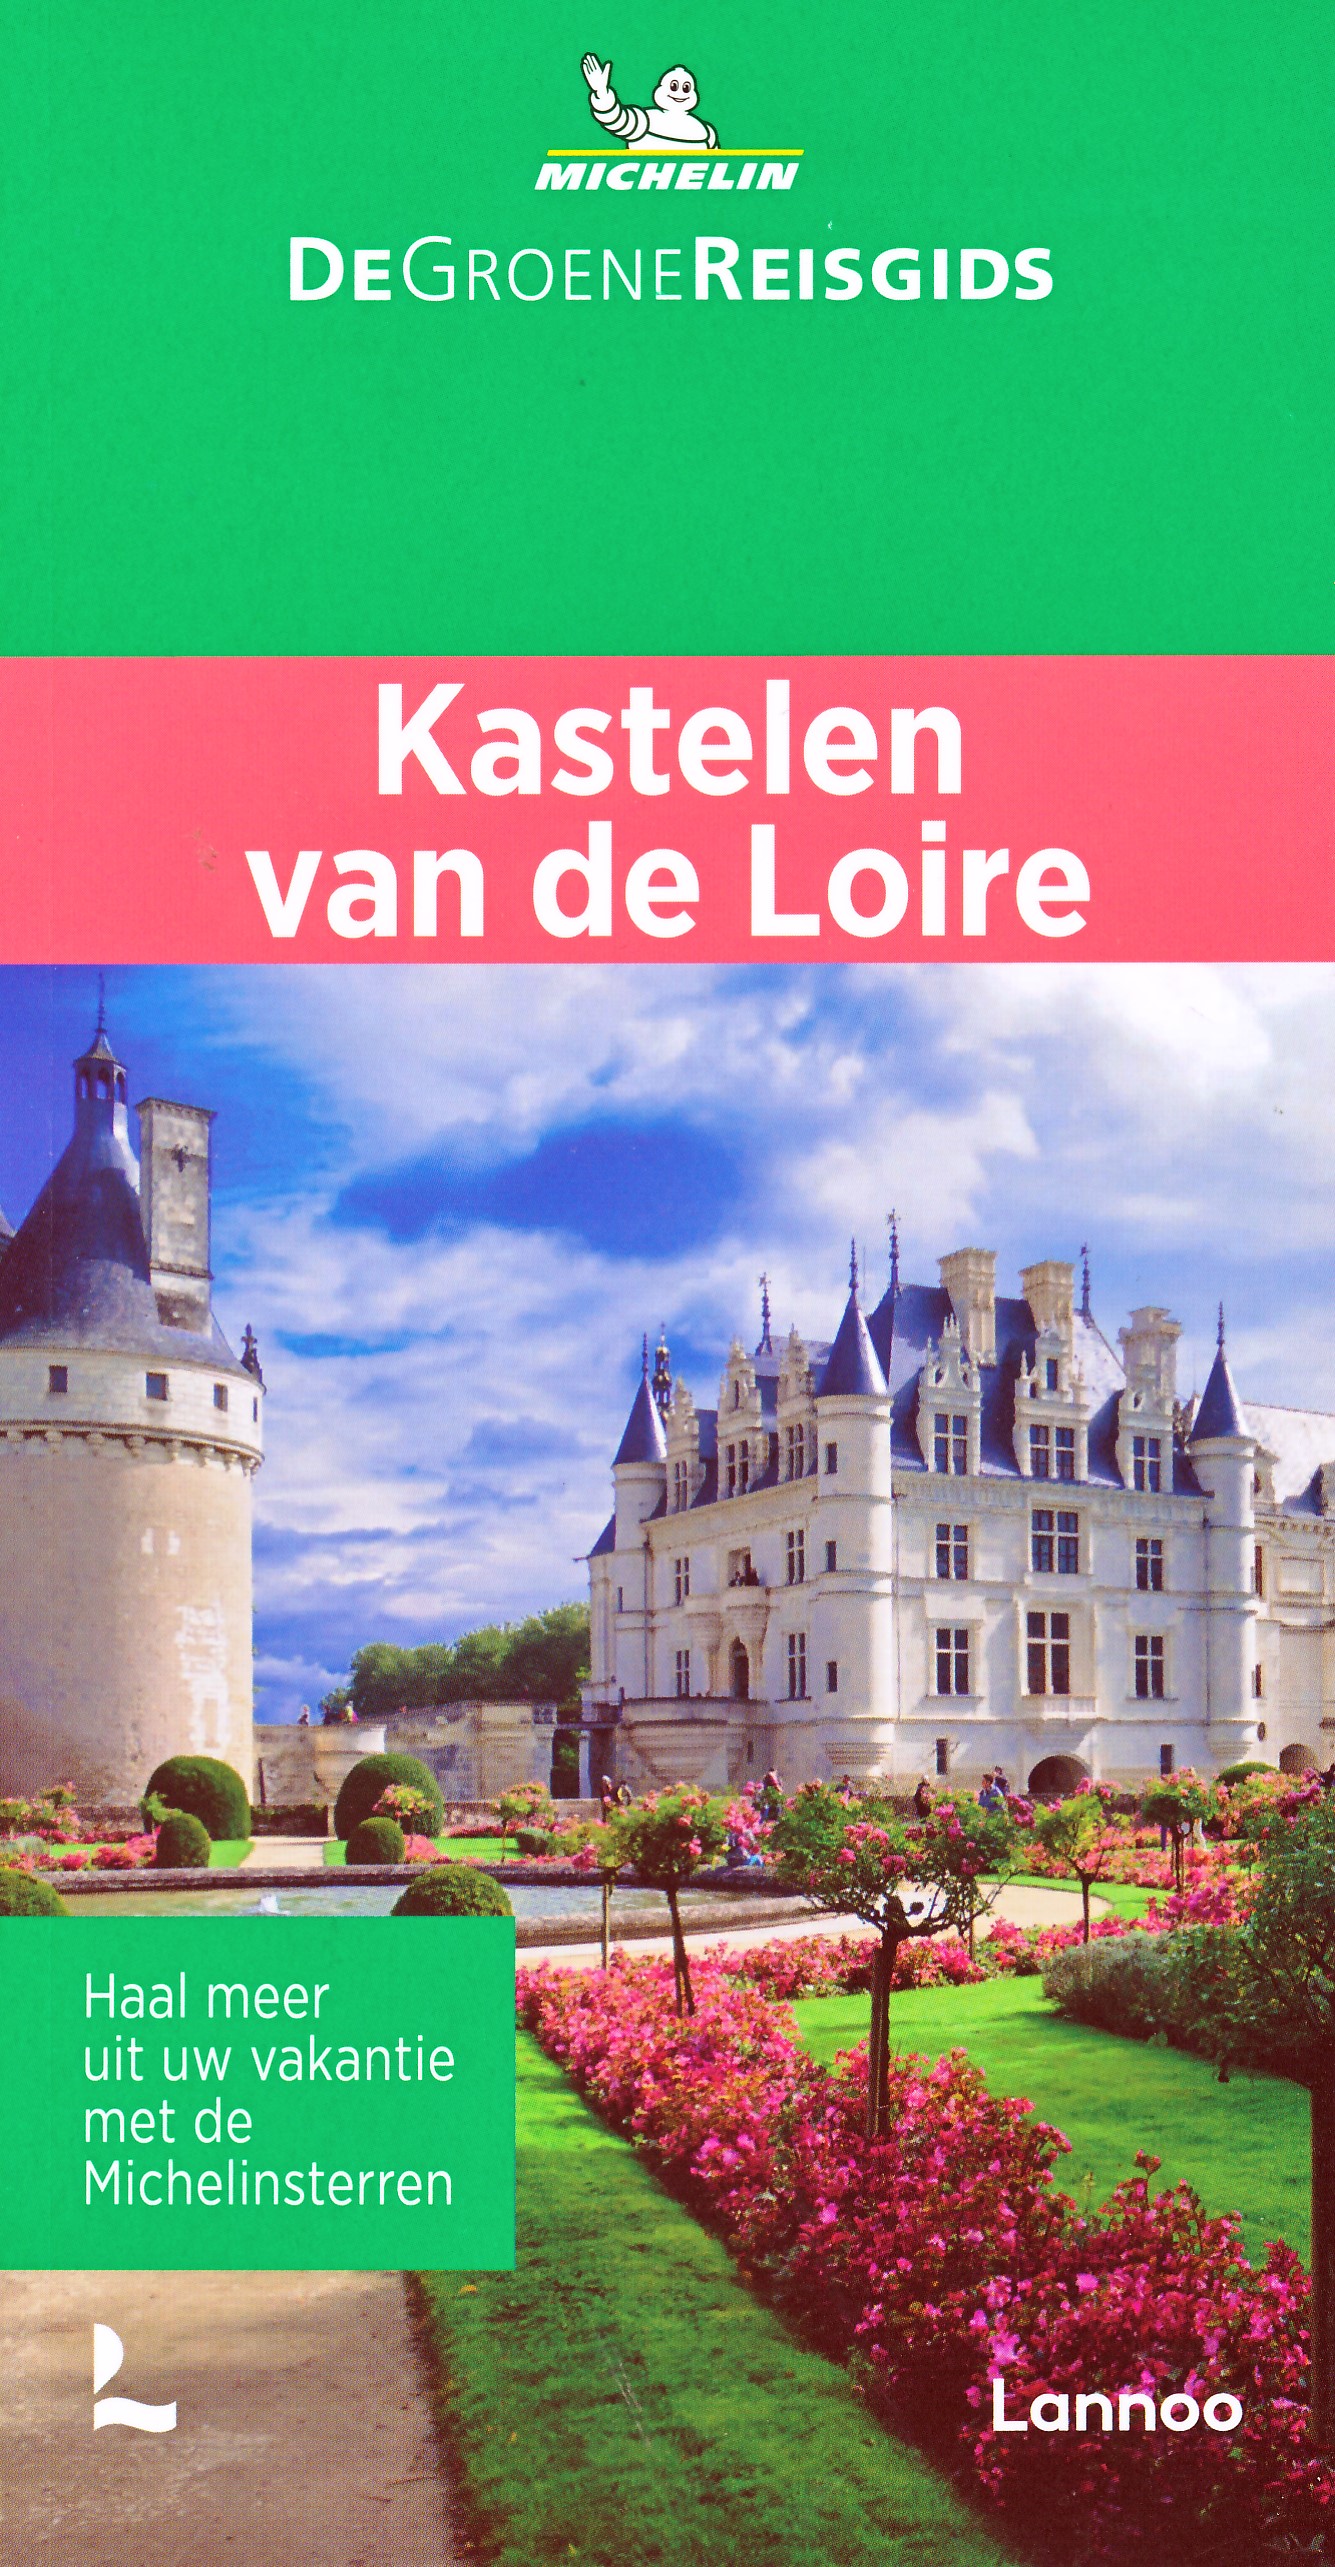 Online bestellen: Reisgids Michelin groene gids Kastelen van de Loire | Lannoo